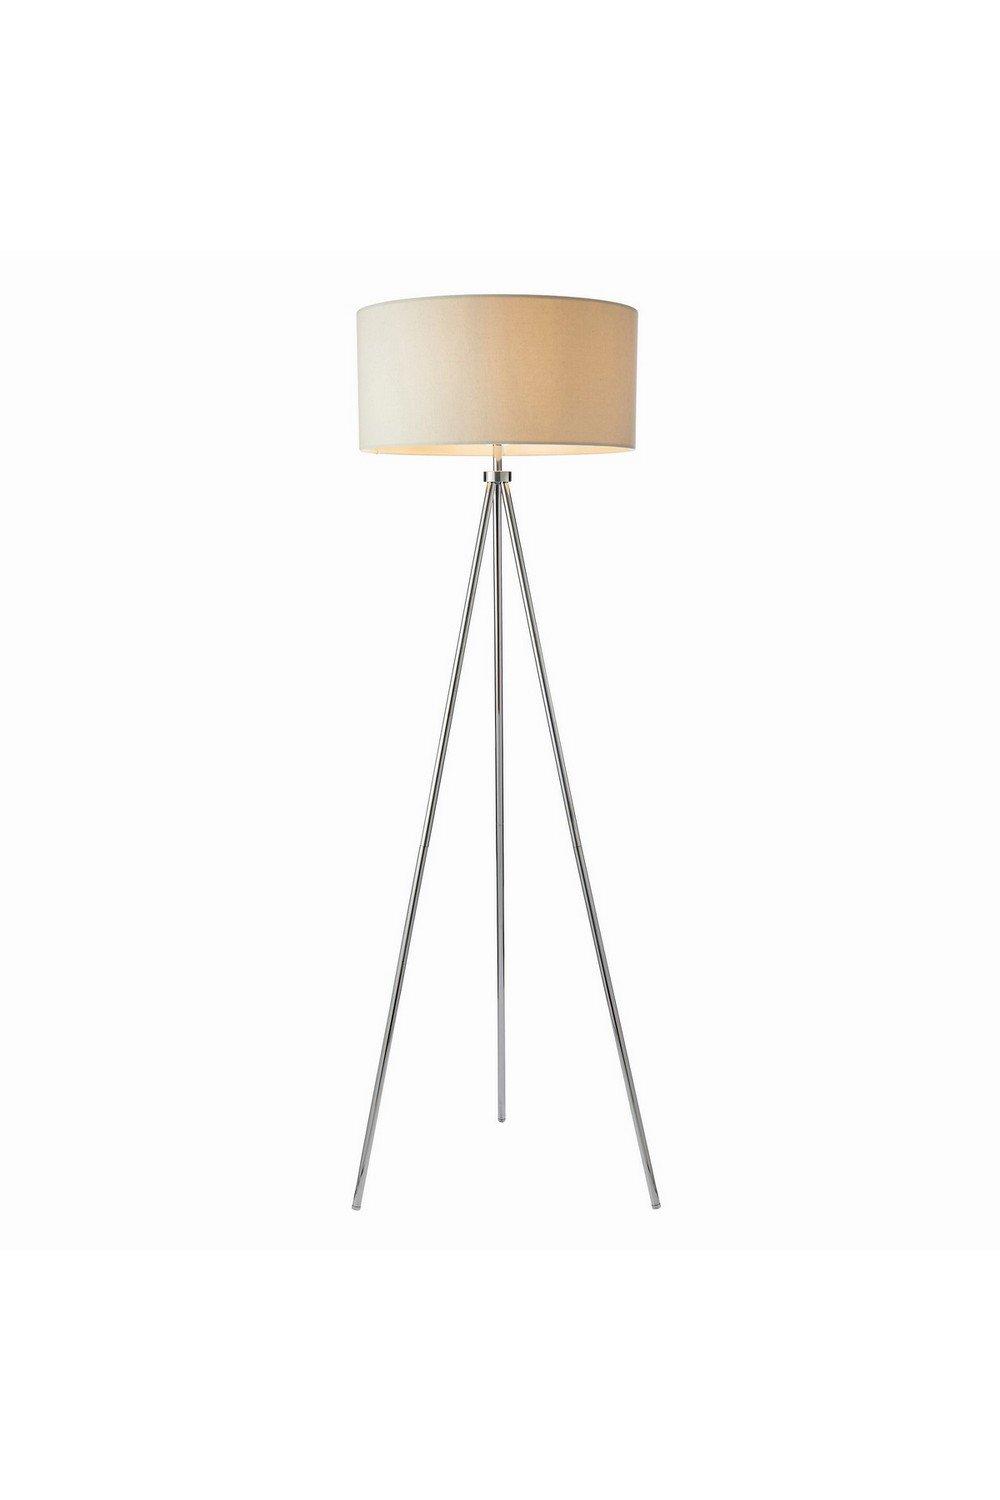 Tri 1 Light Floor Lamp Chrome Ivory Linen Effect E27